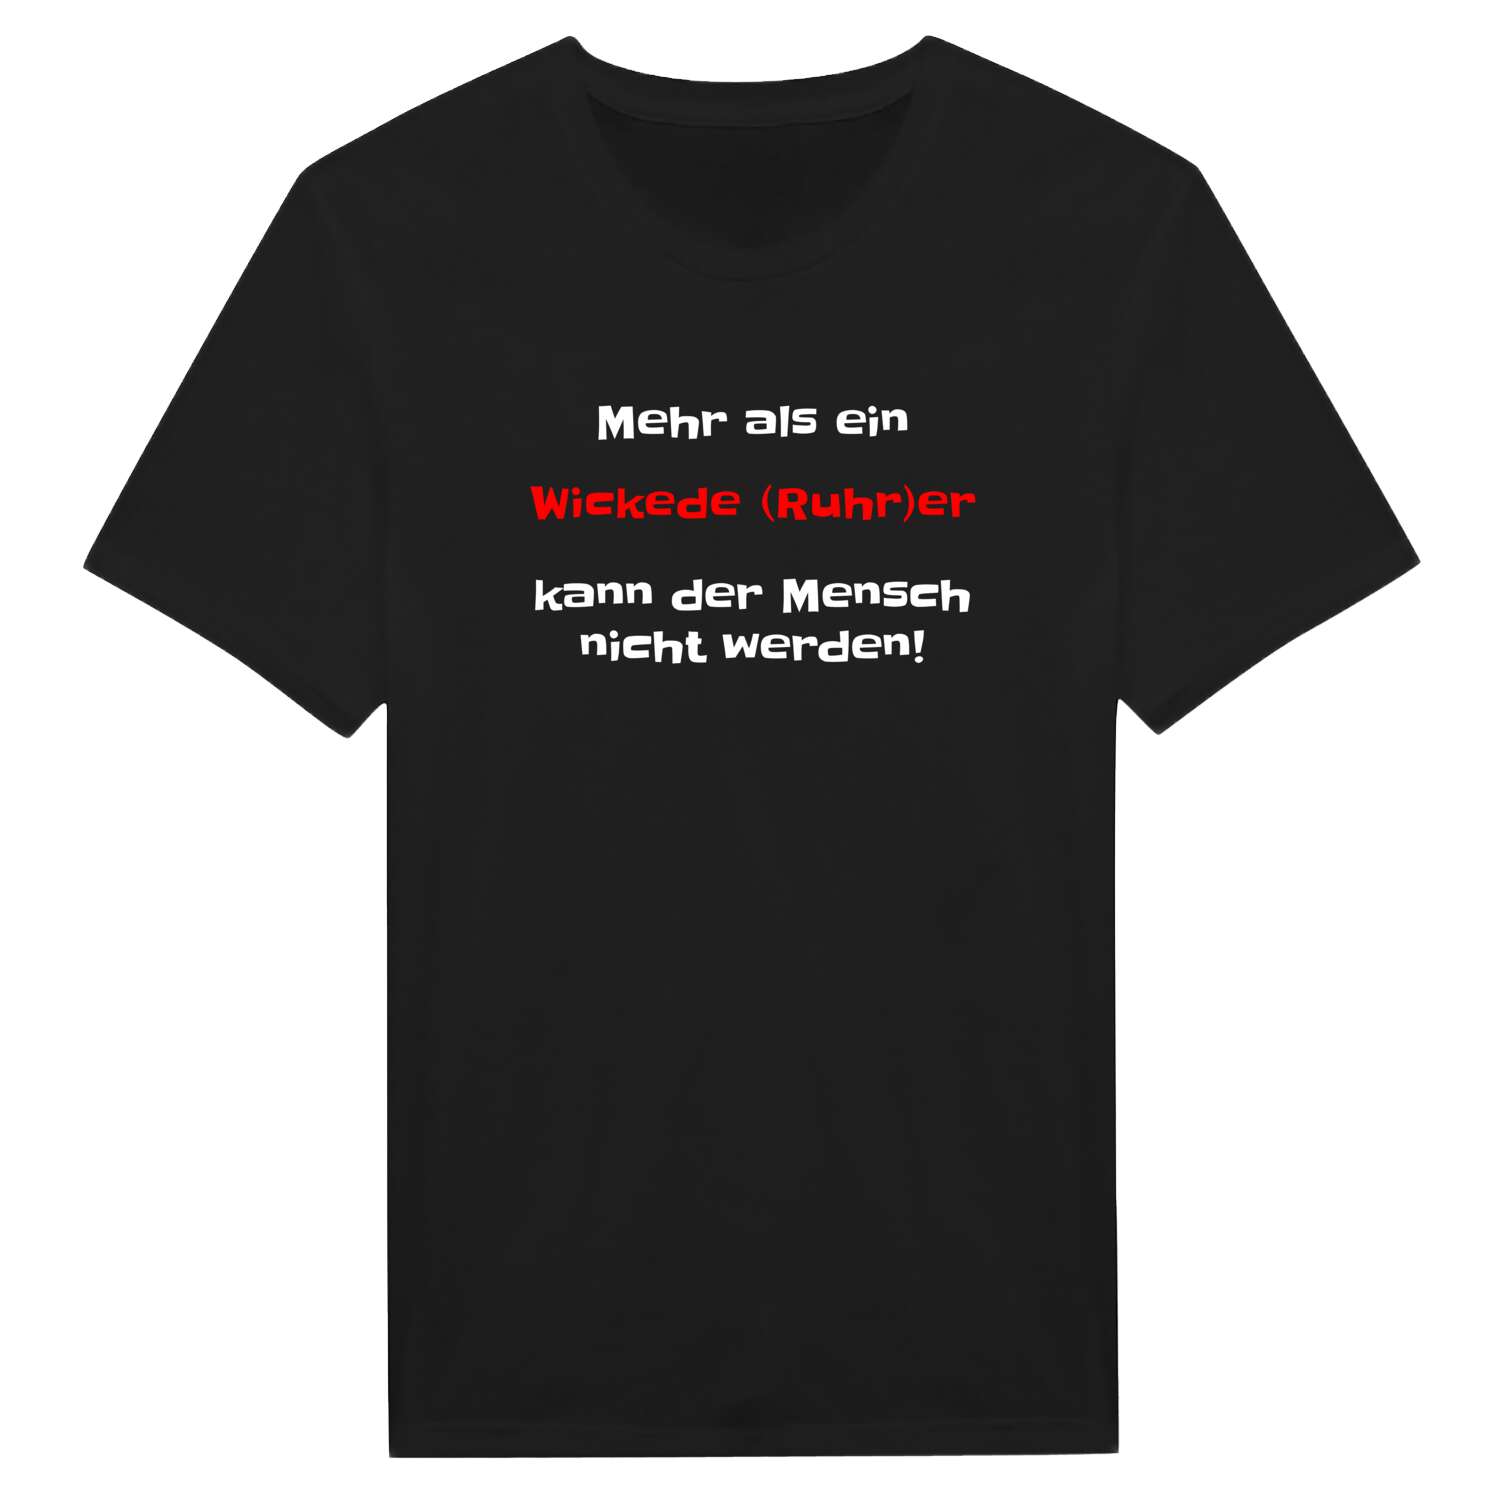 Wickede (Ruhr) T-Shirt »Mehr als ein«